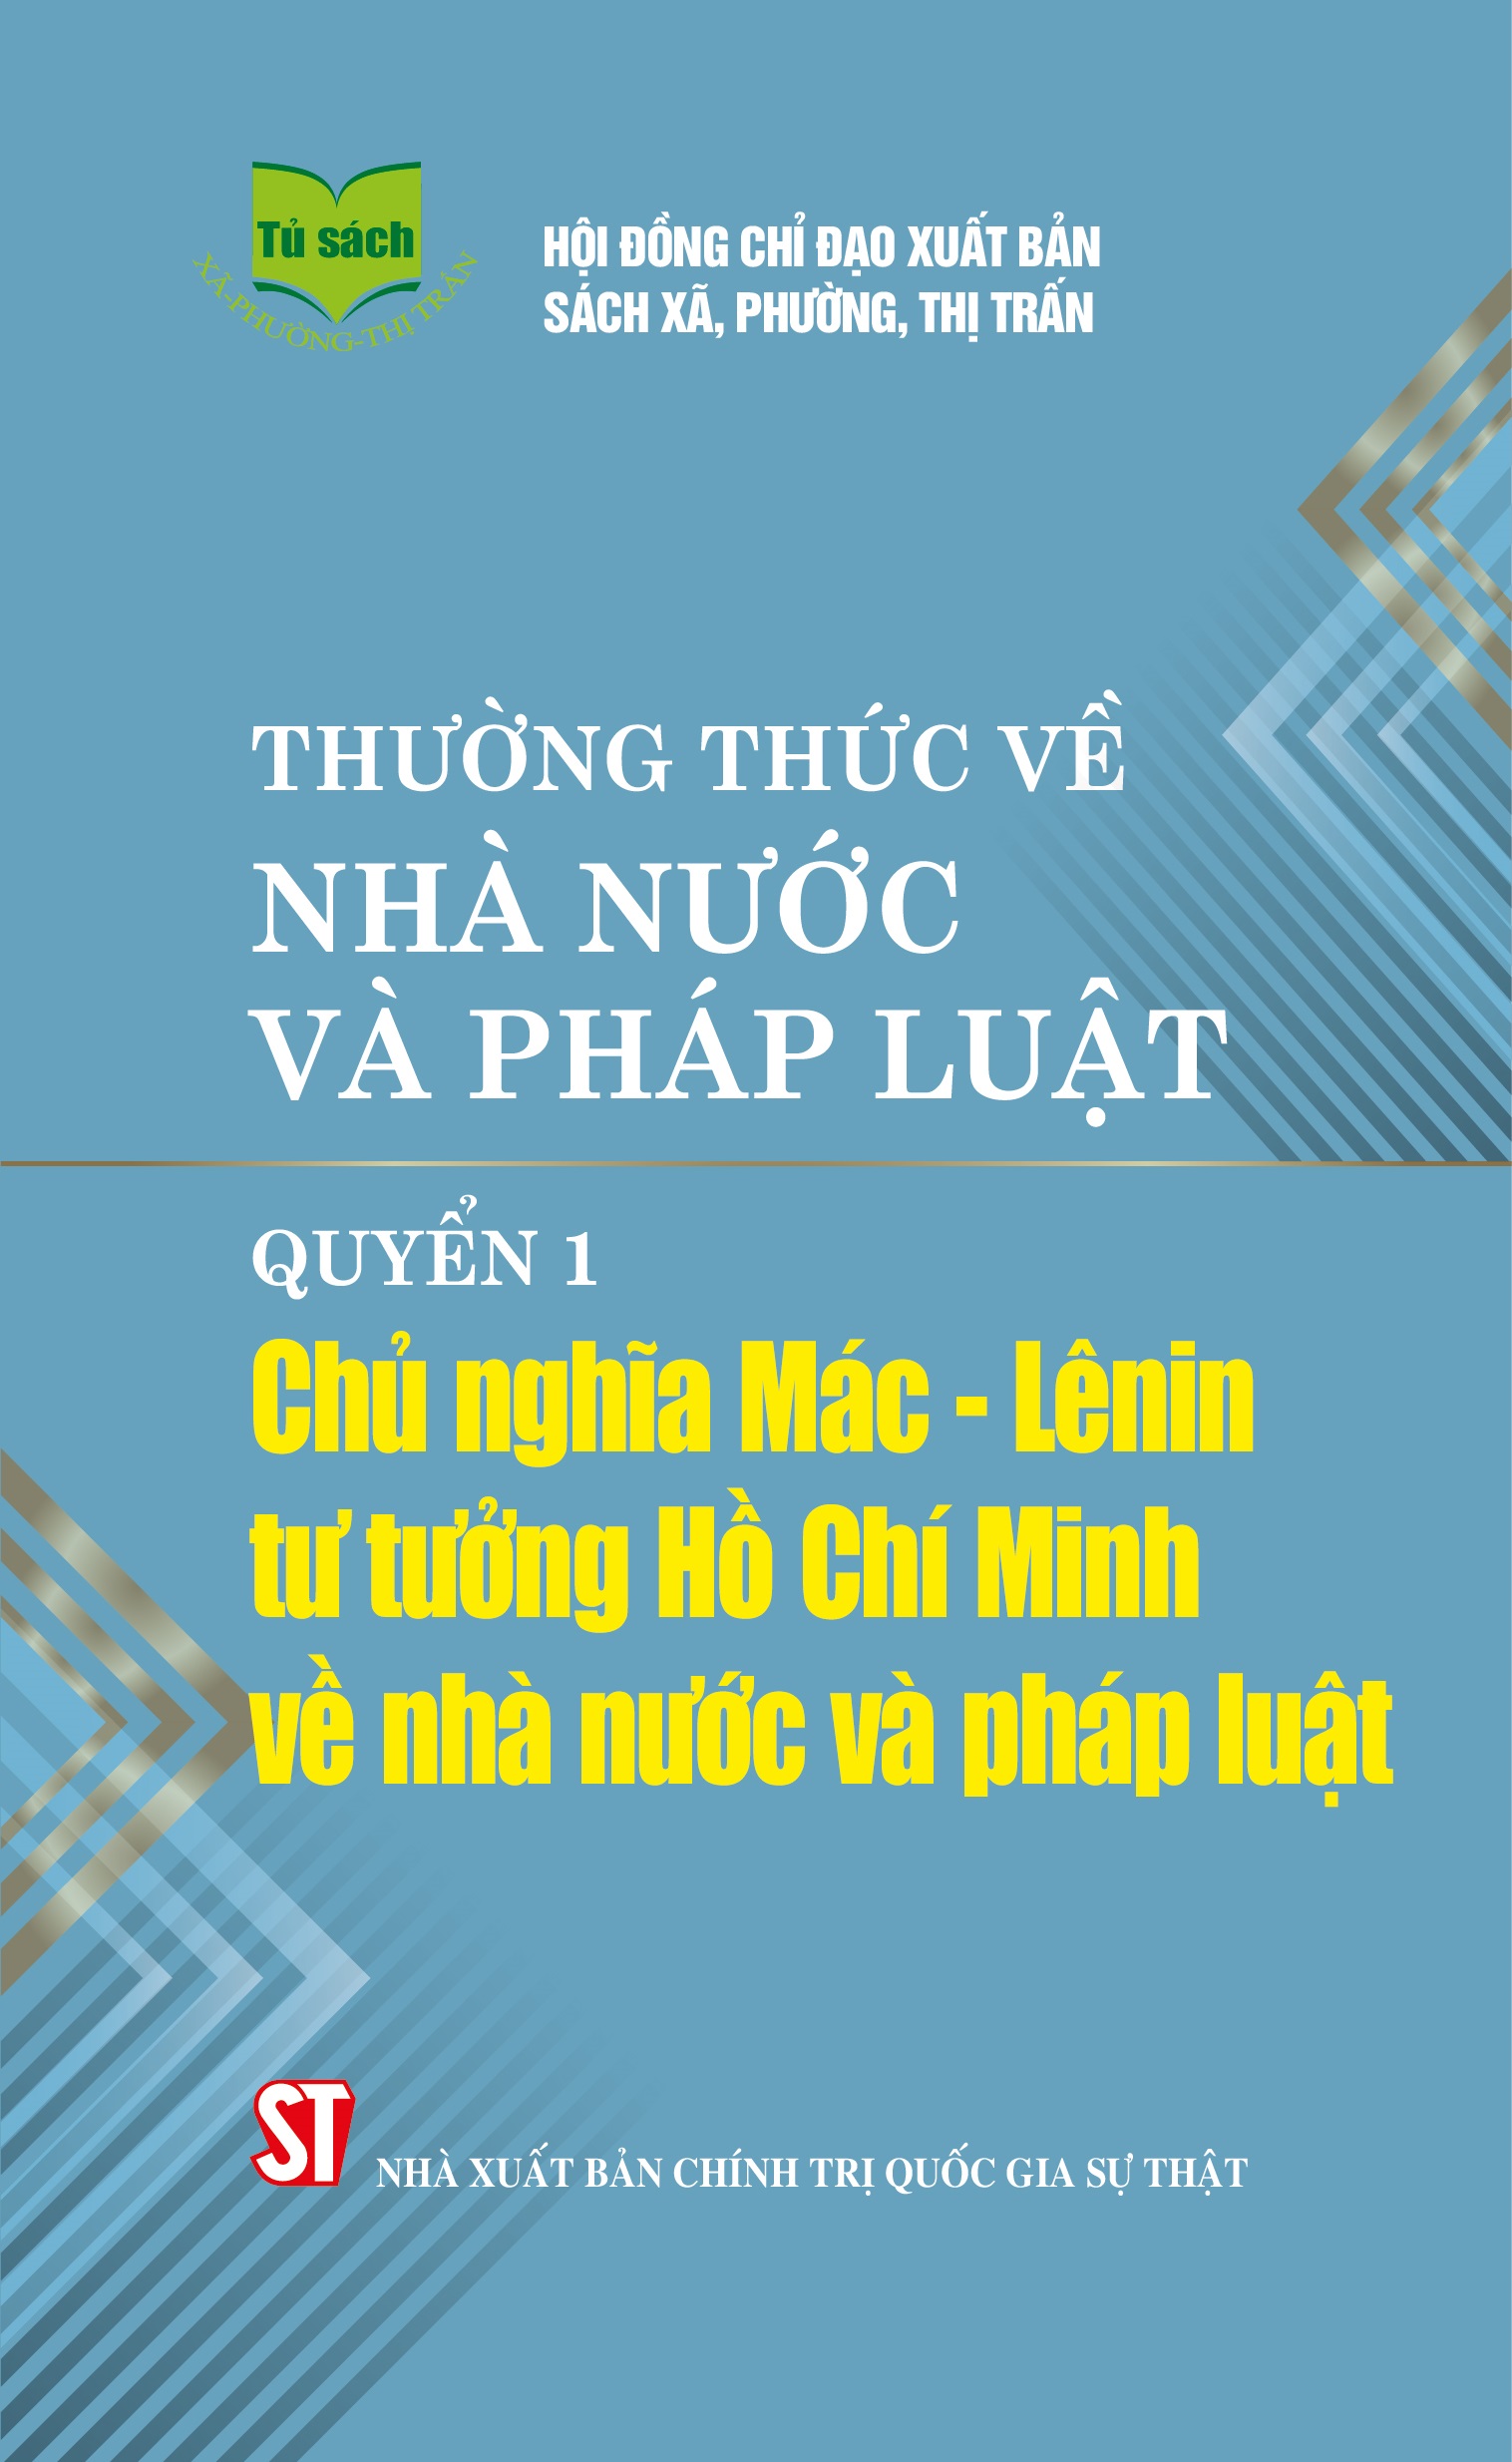 Thường thức về nhà nước và pháp luật - Quyển 1: Chủ nghĩa Mác - Lênin, tư tưởng Hồ Chí Minh về nhà nước và pháp luật 